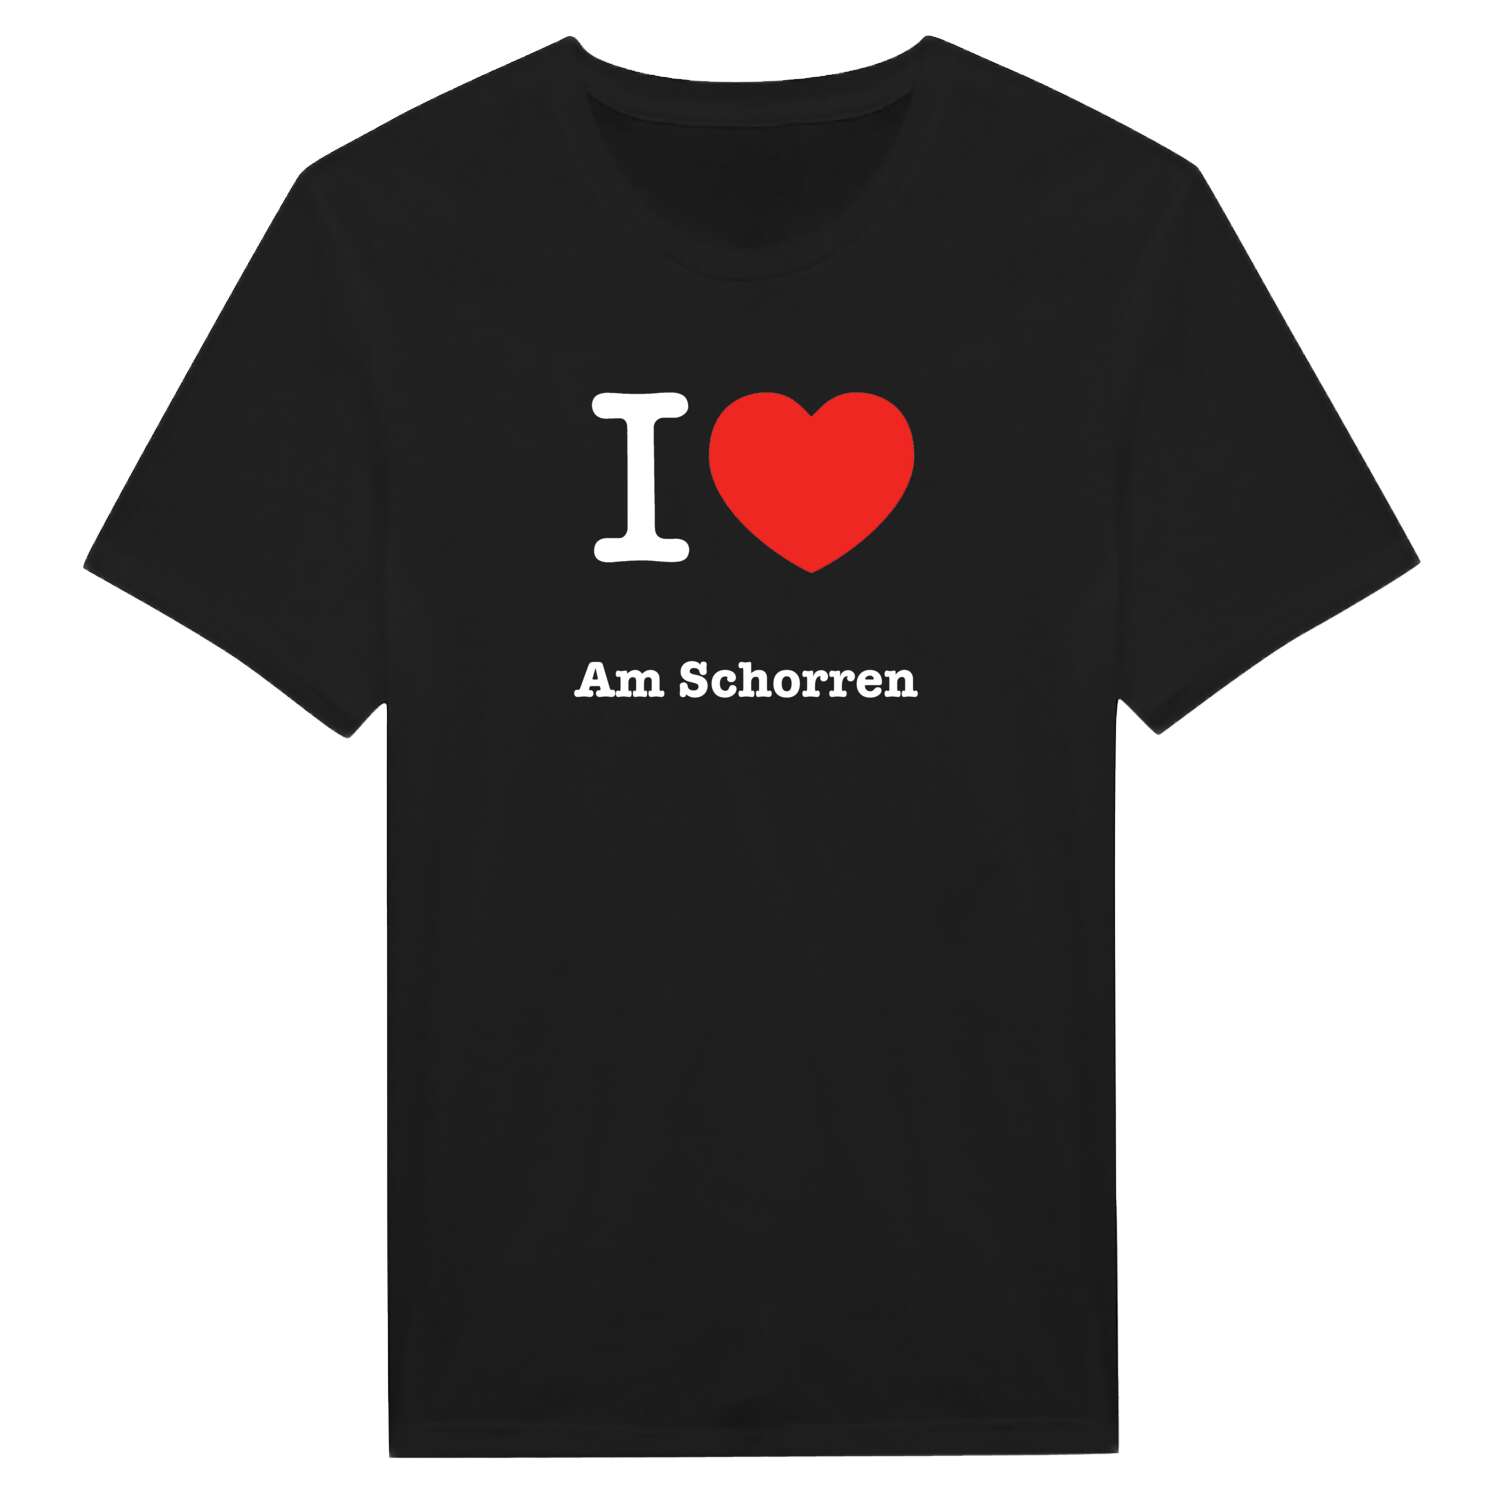 Am Schorren T-Shirt »I love«